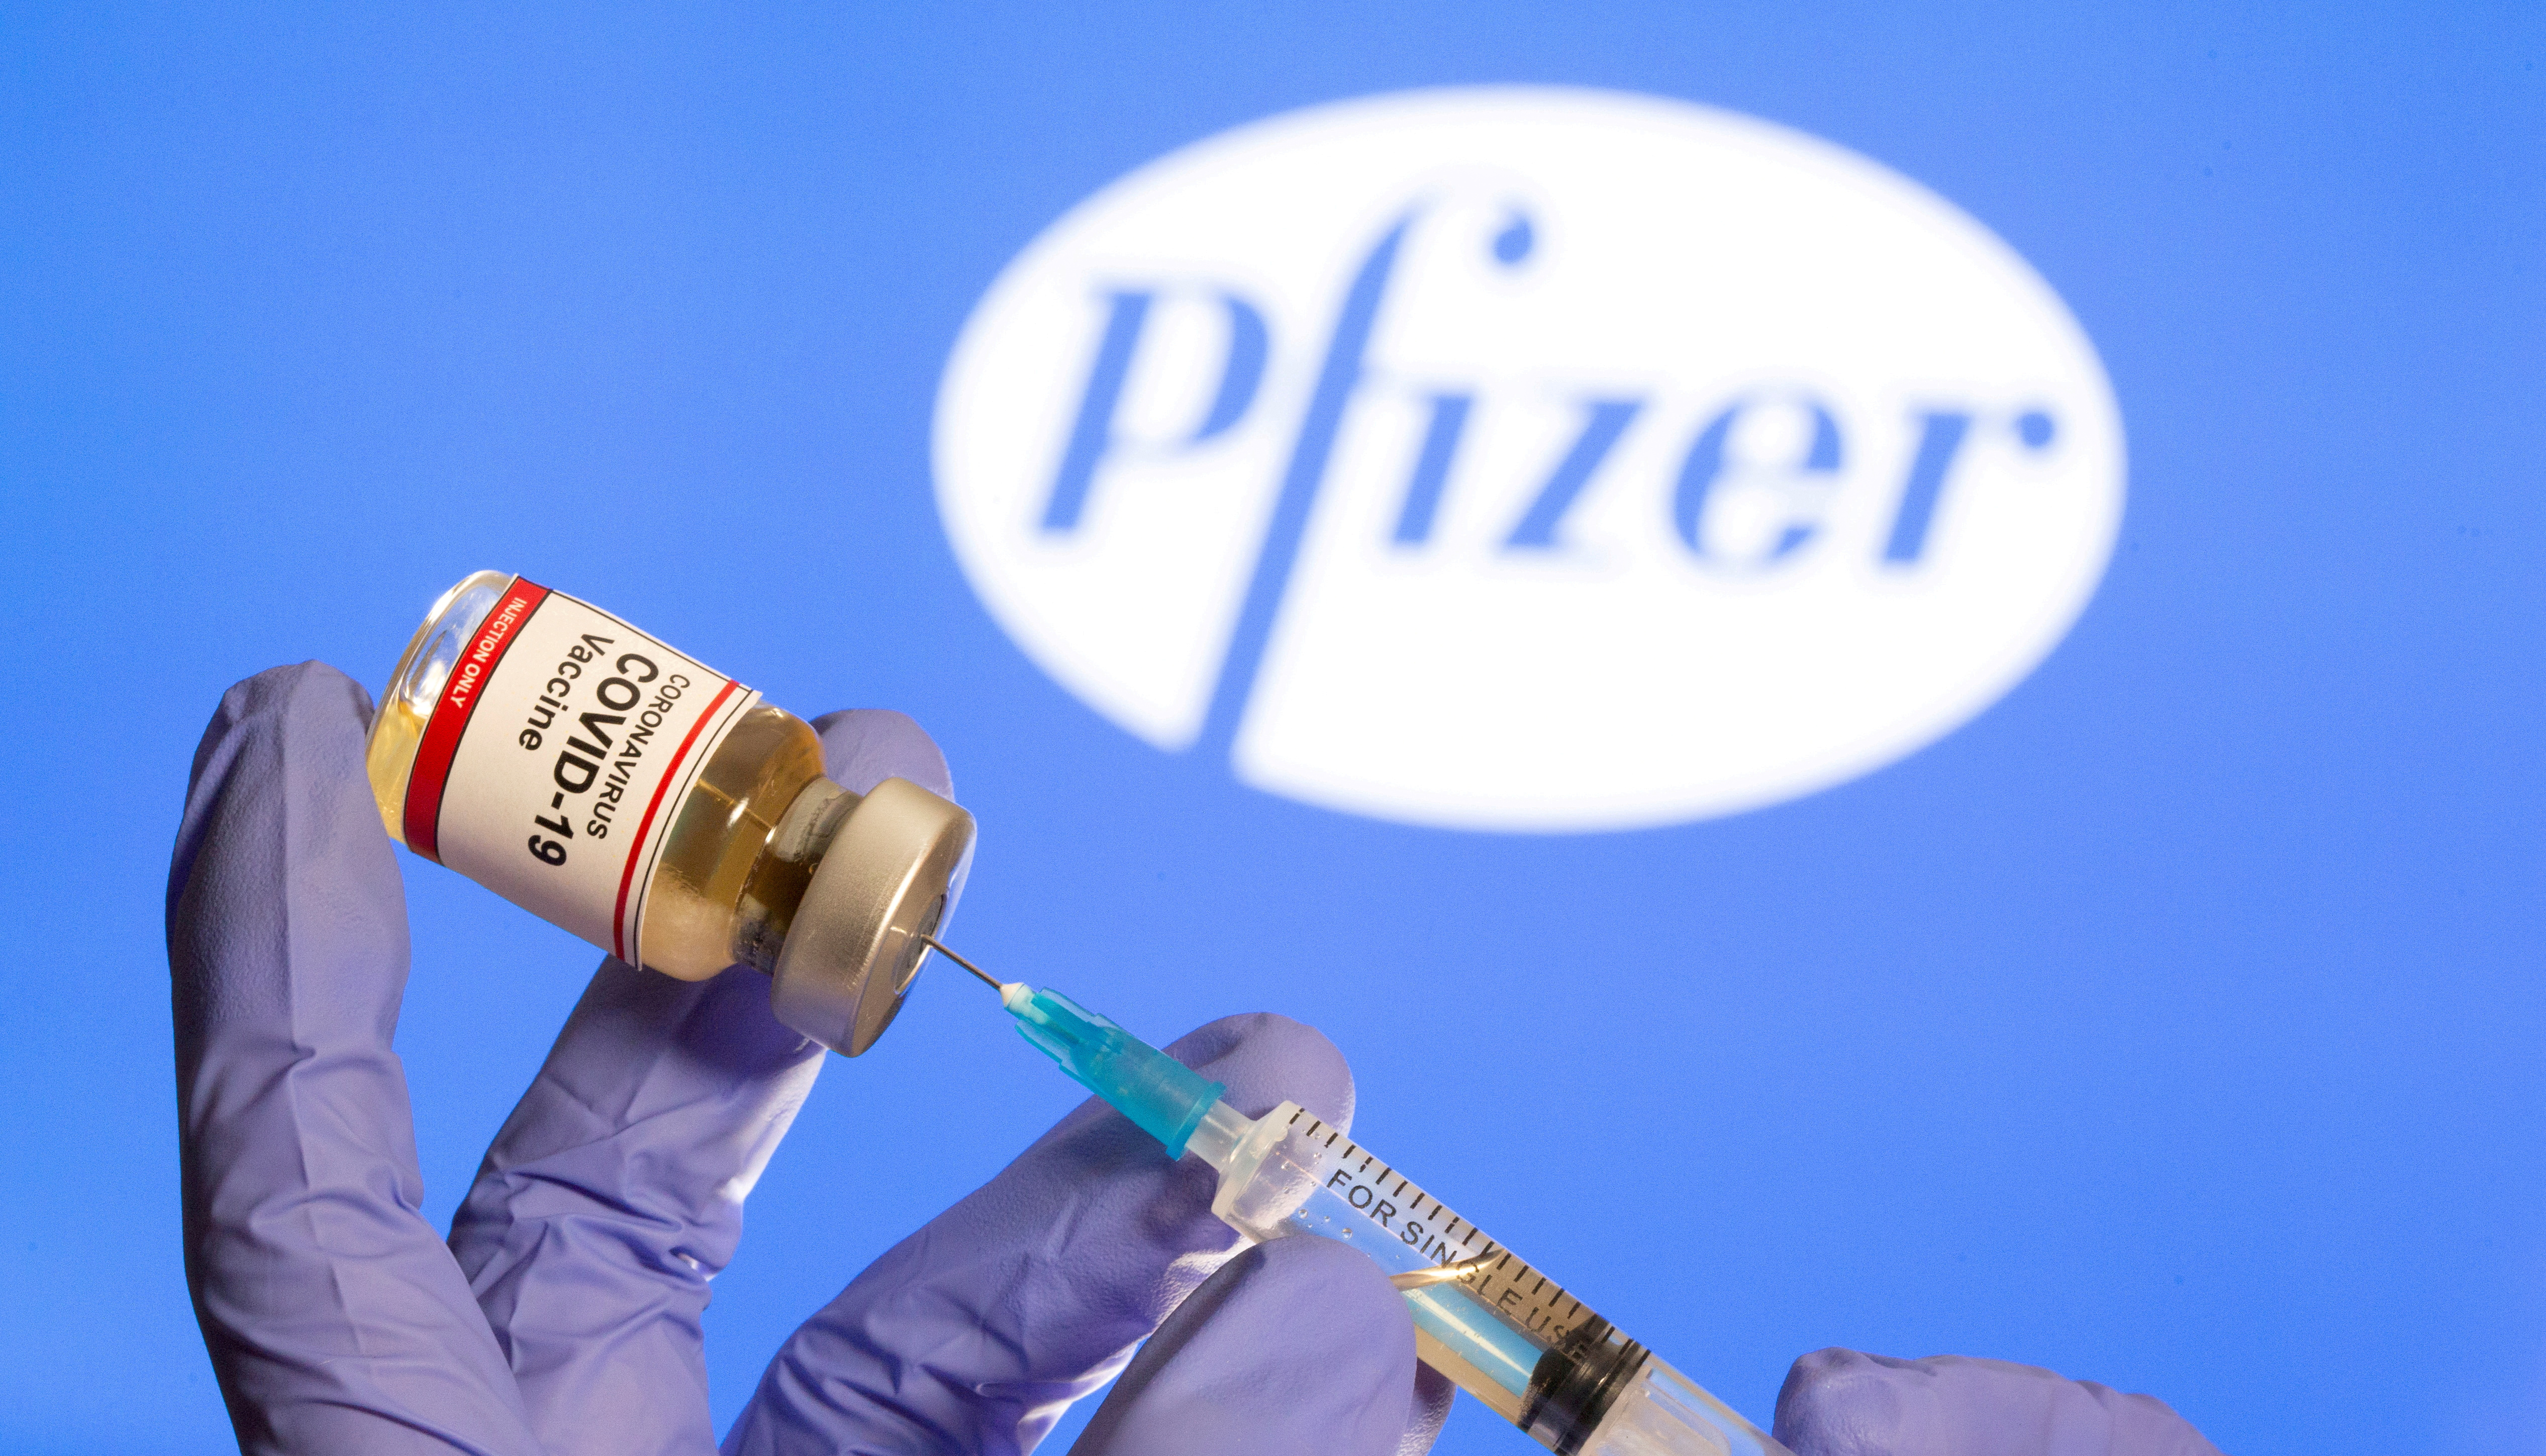 Pfizer tiene como objetivo introducir 25 innovaciones para 2025 que cambien el paradigma de enfermedades
REUTERS/Dado Ruvic/File Photo/File Photo